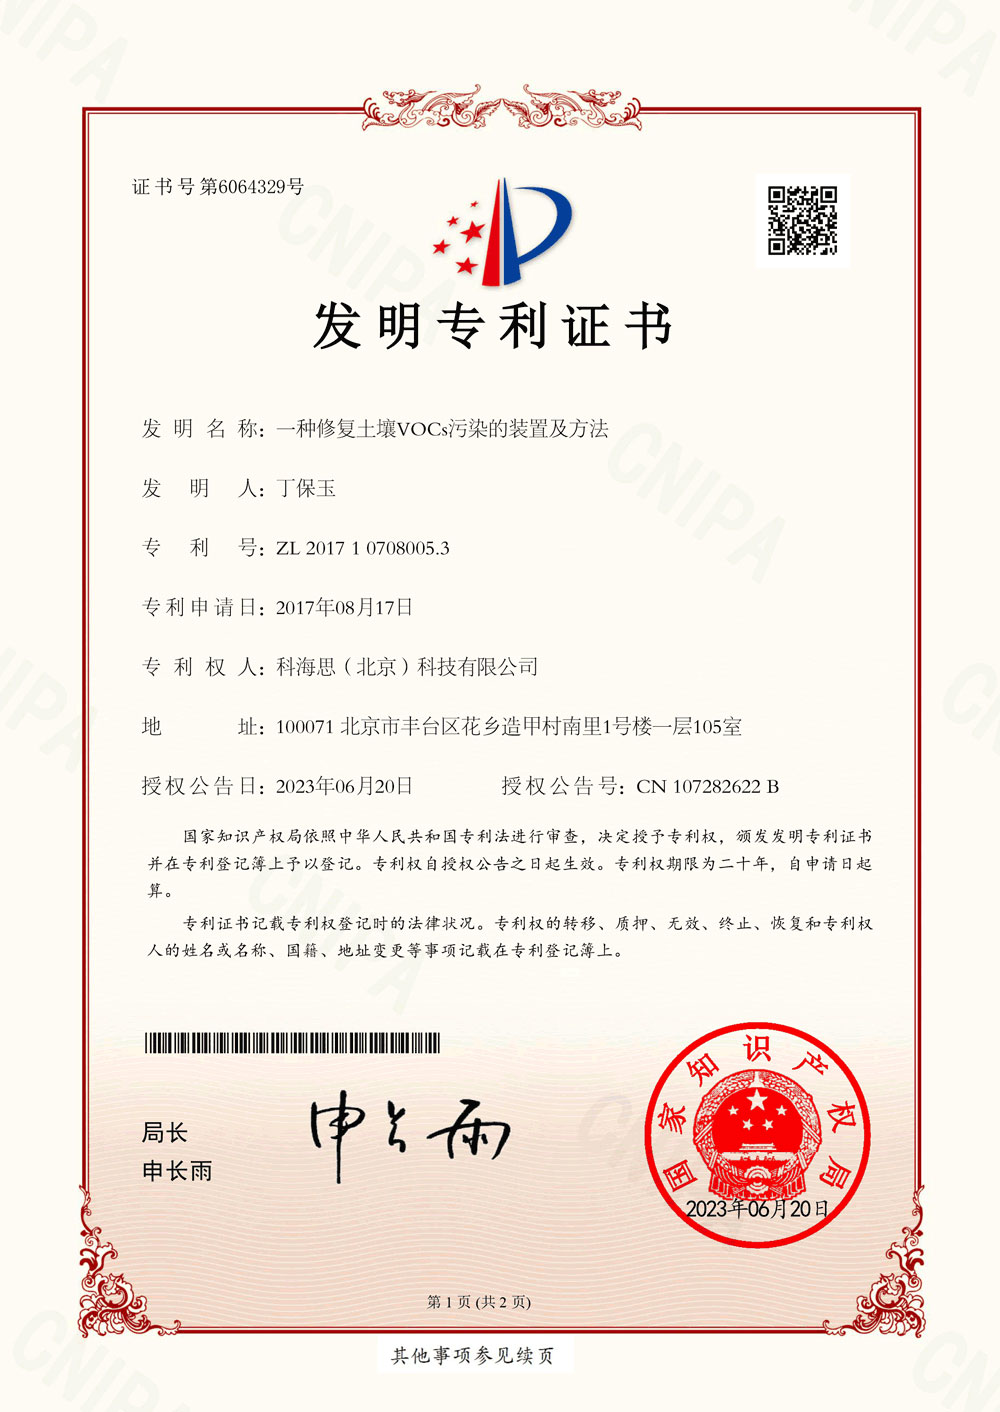 热烈祝贺9170官方金沙入口登录集团喜获新发明专利证书